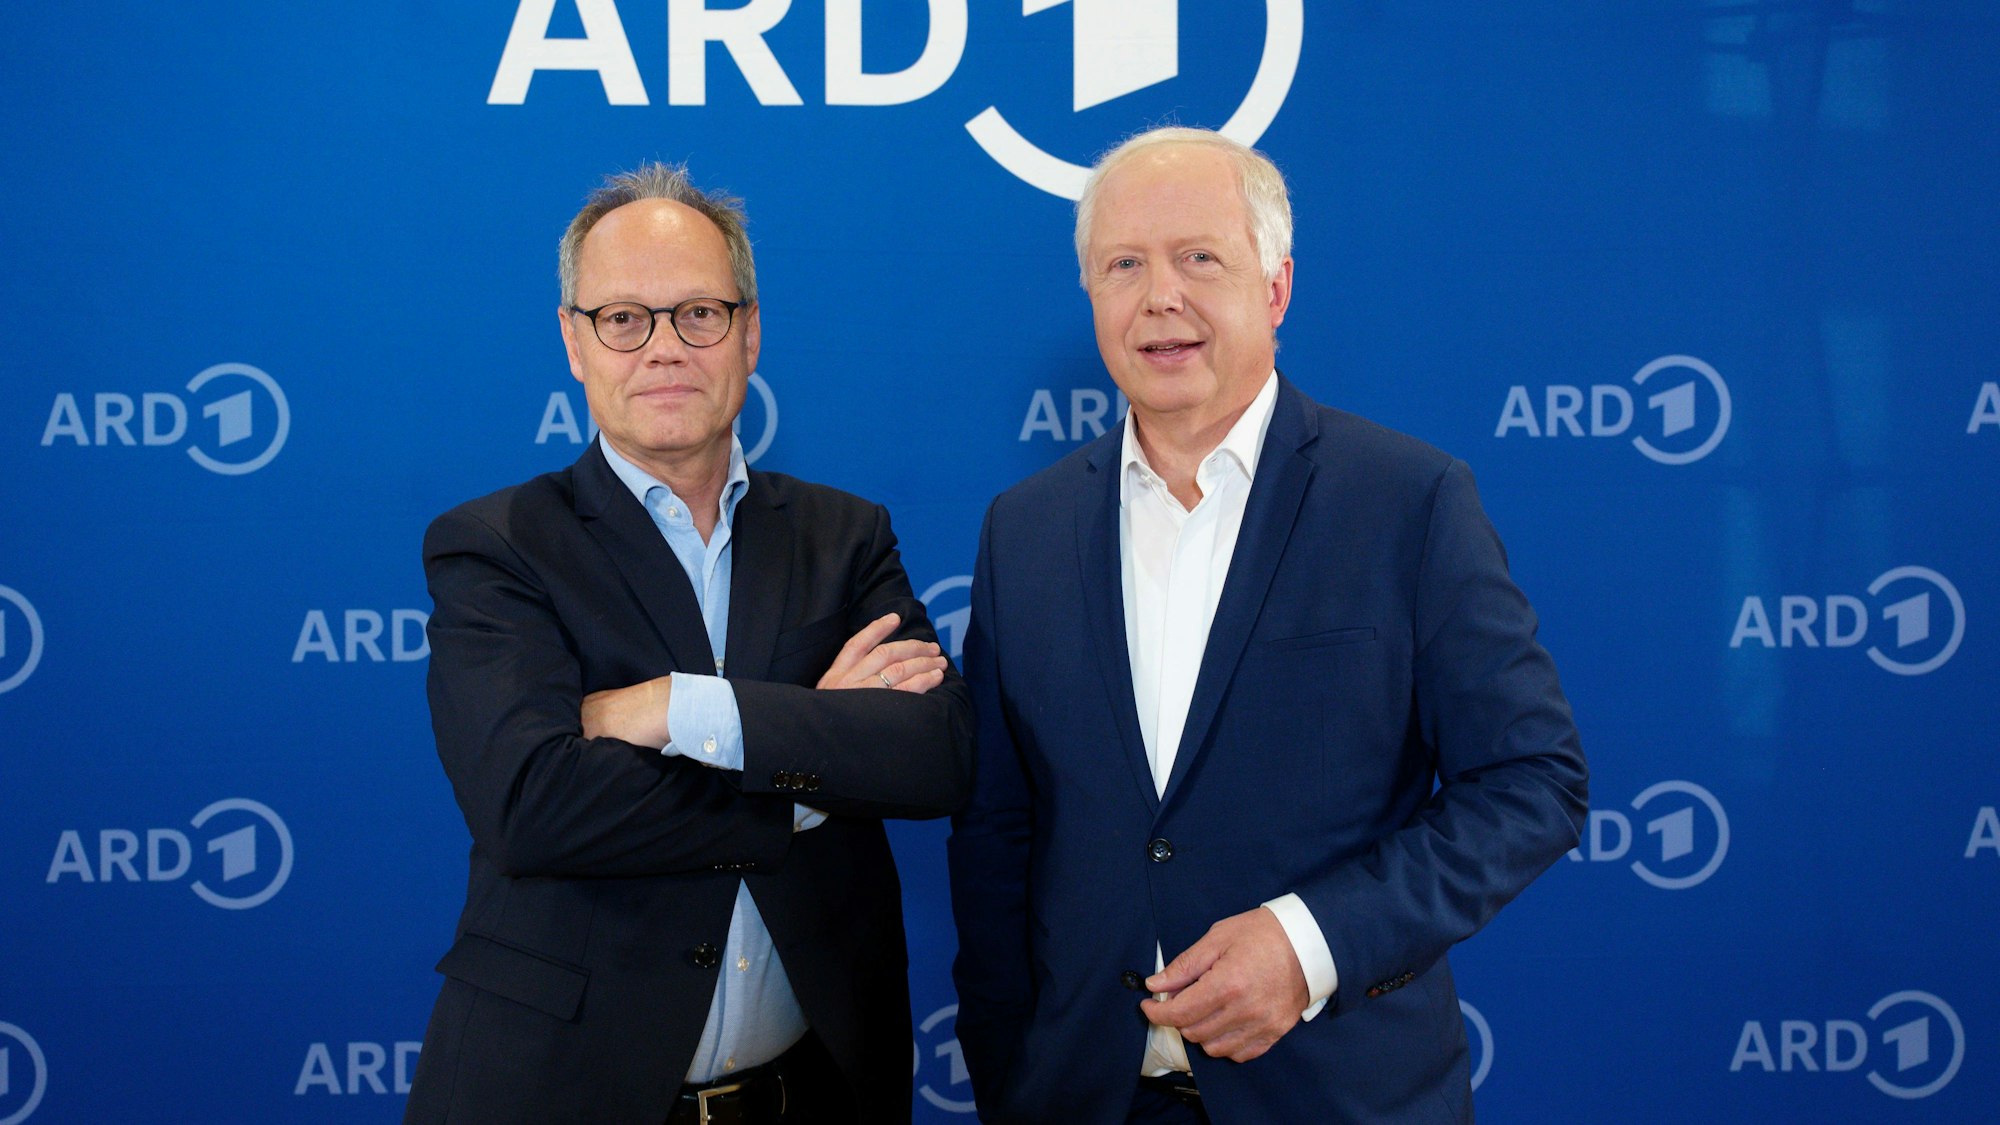 Kai Gniffke, SWR-Intendant und zukünftiger ARD-Vorsitzender, und Tom Buhrow, aktueller ARD-Vorsitzender und WDR-Intendant, stehen nach einem Pressegespräch vor einer Wand mit ARD-Logos.